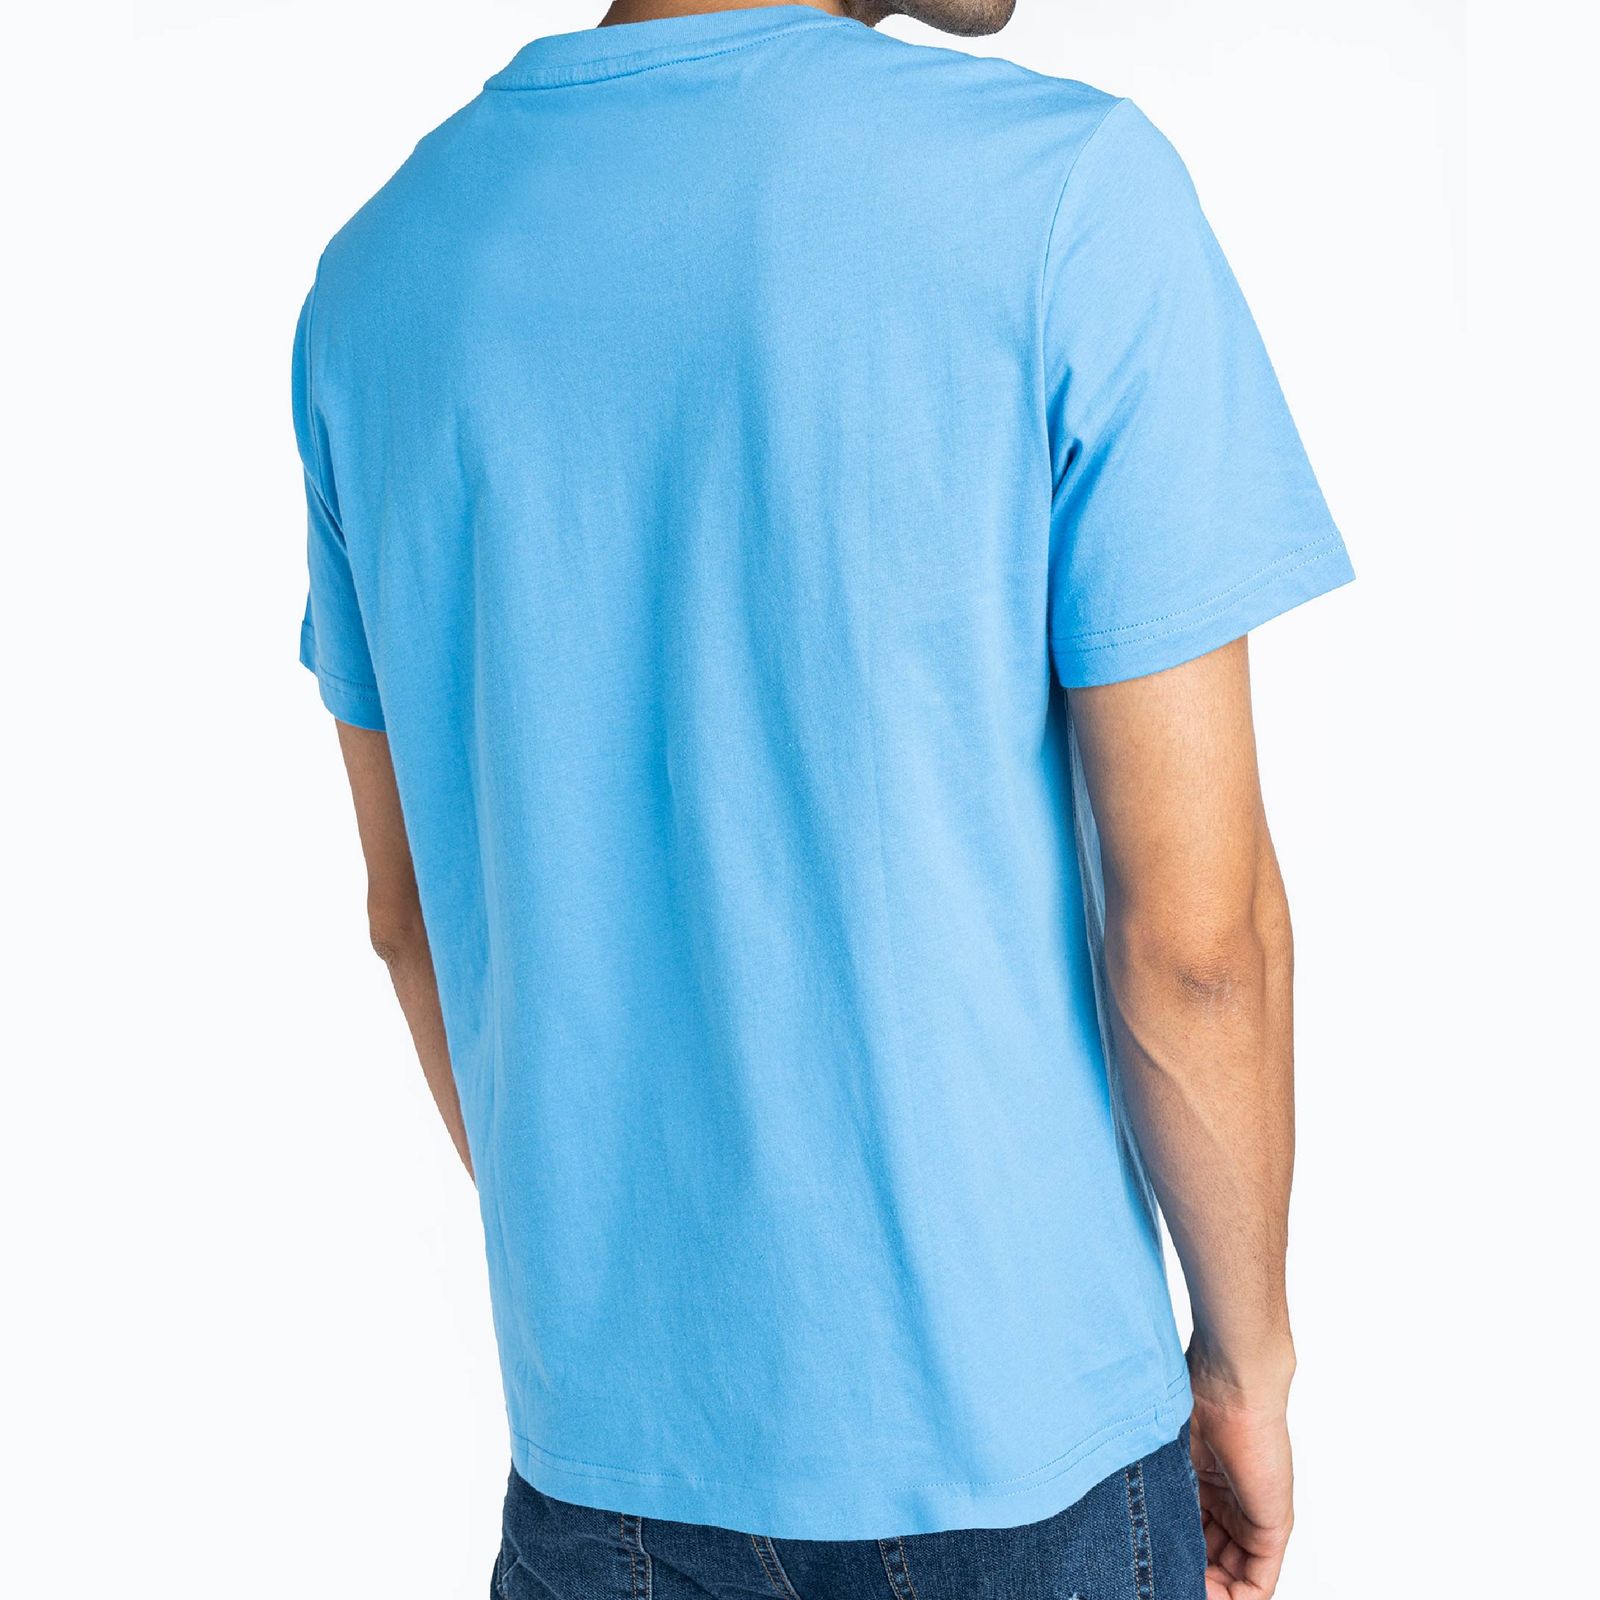 تی شرت آستین کوتاه مردانه جین وست مدل یقه گرد کد 1551328 رنگ آبی -  - 2